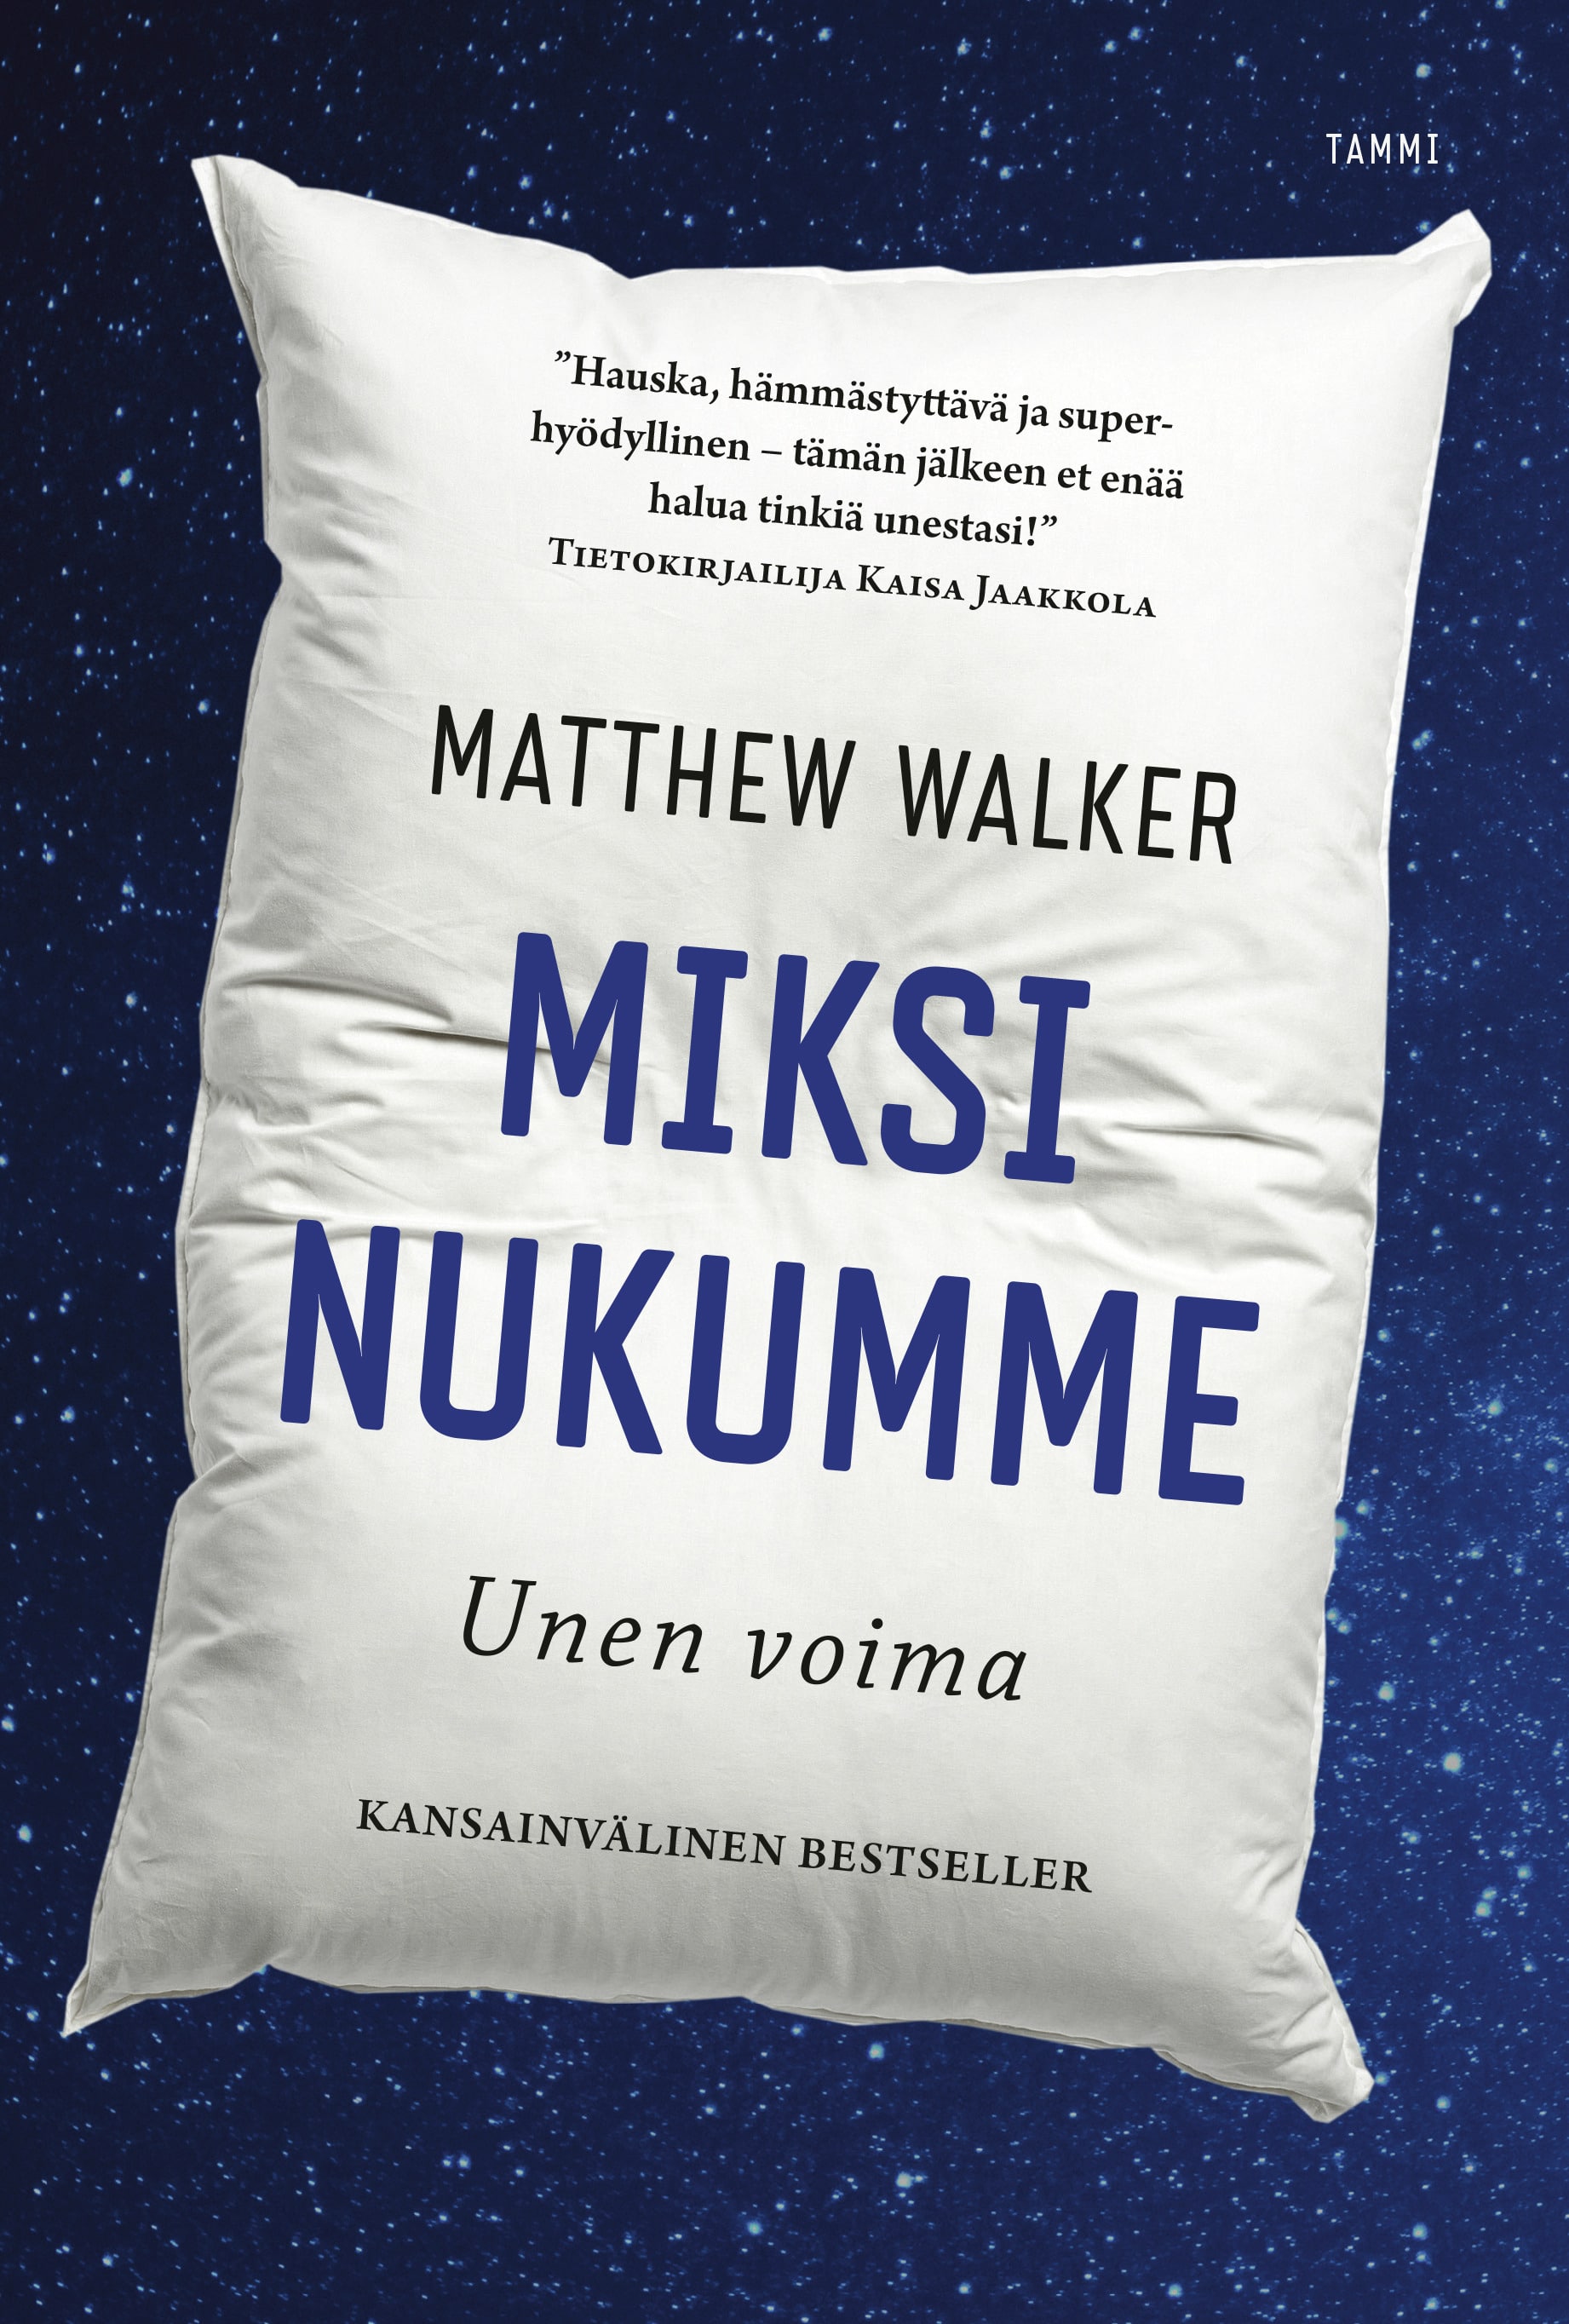 Miksi nukumme -kijan kansikuvassa on sinisellä tähtitaivaalla kookas valkoinen tyyny, jossa on kirjan ja sen tekijän nimi sekä maininta "kansainvälinen bestseller".